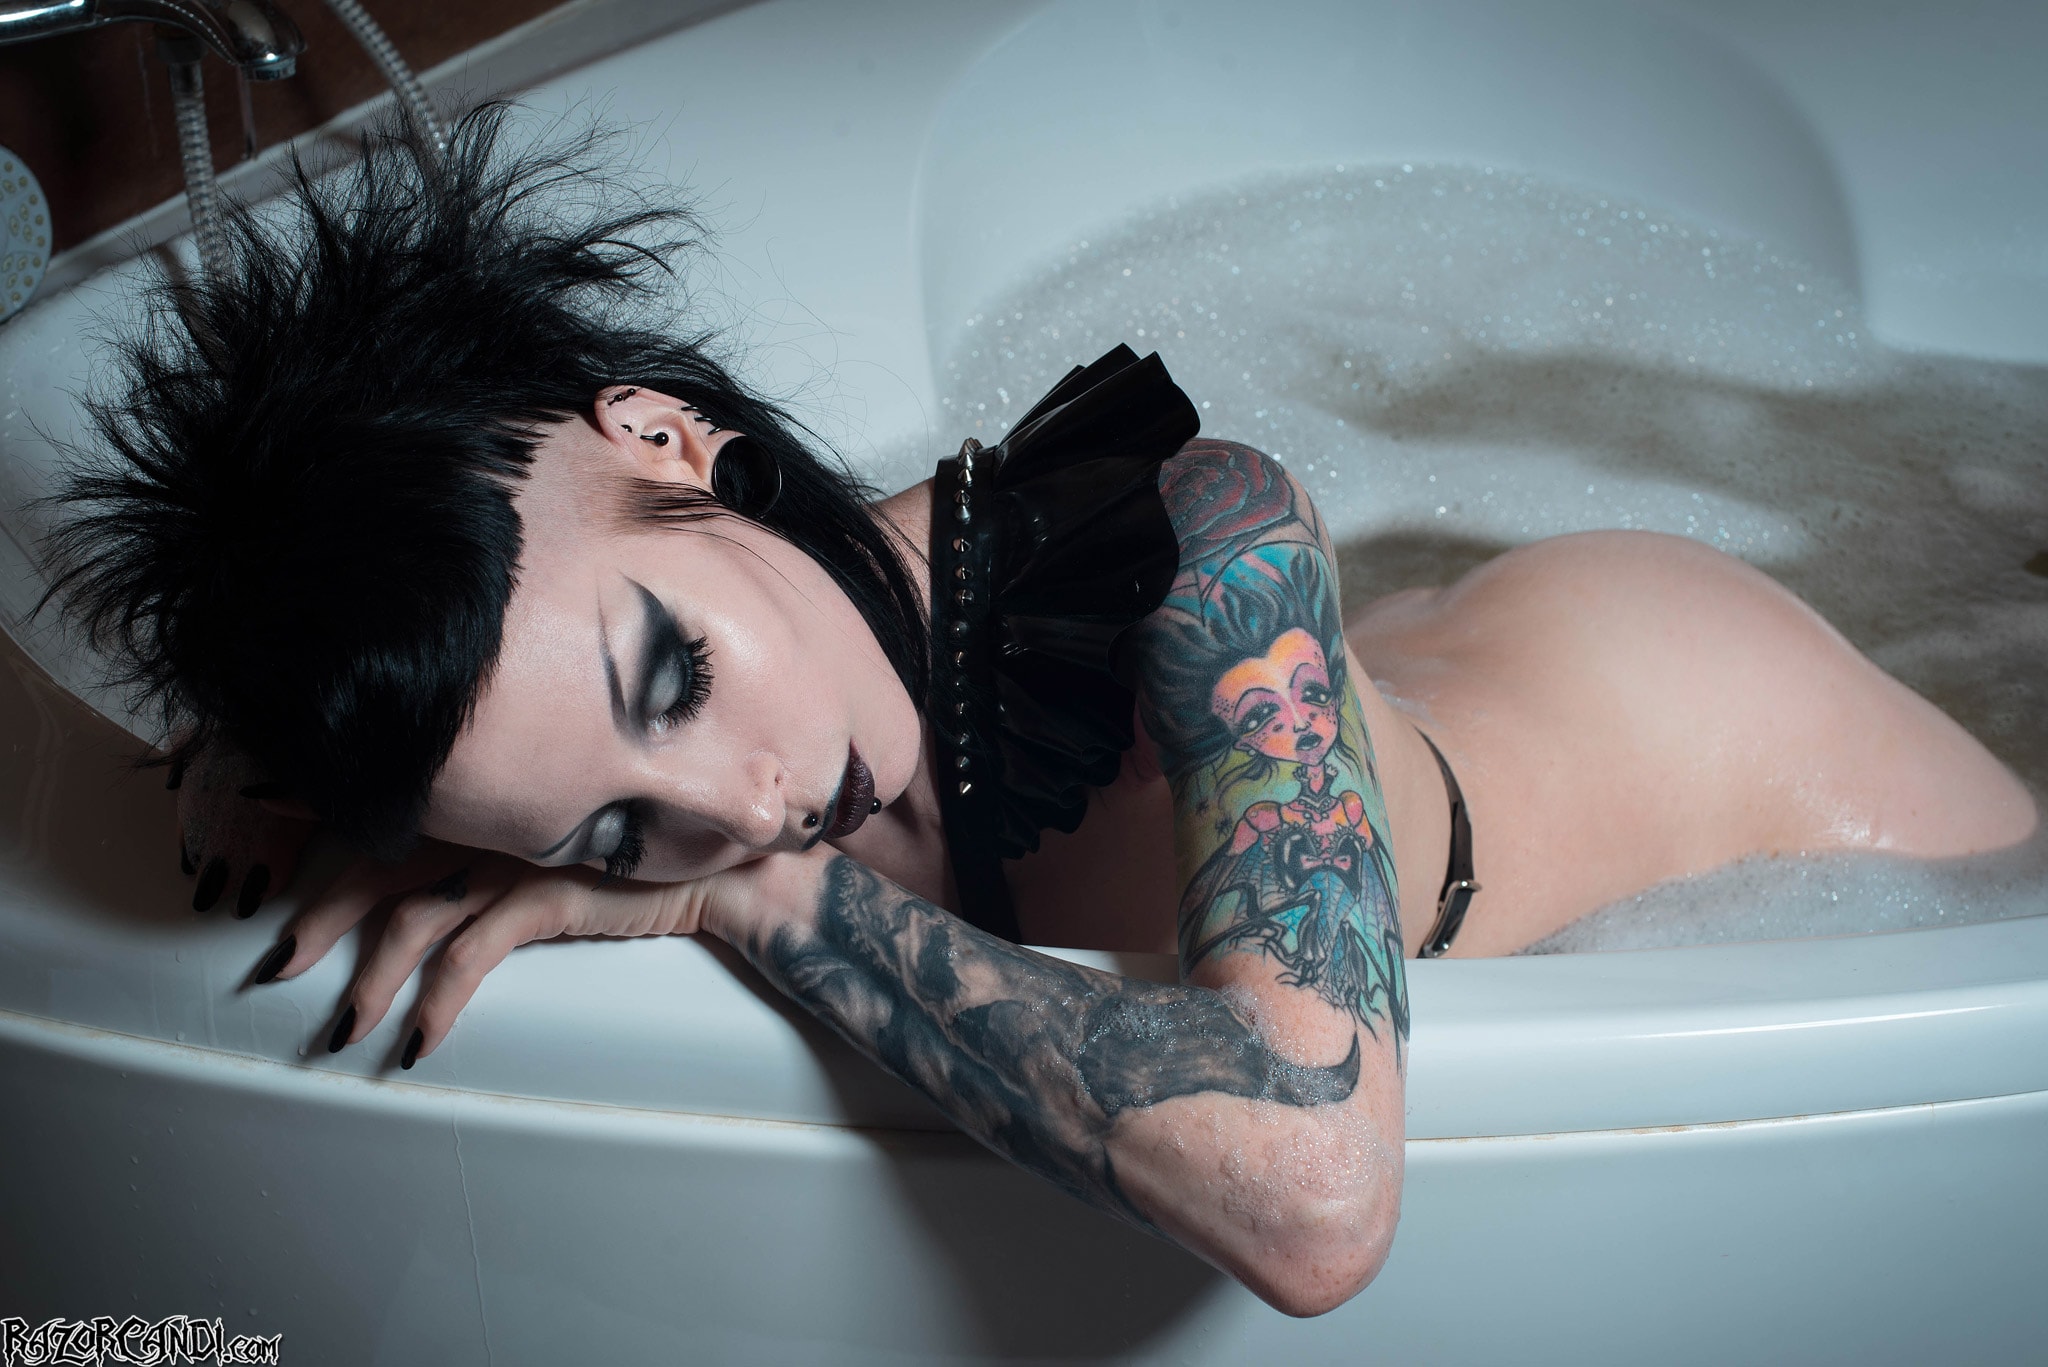 Razor Candi 'Busty Wet Fetishy Gothic Babe Bubble Bath Time' starring Razor Candi (Photo 12)